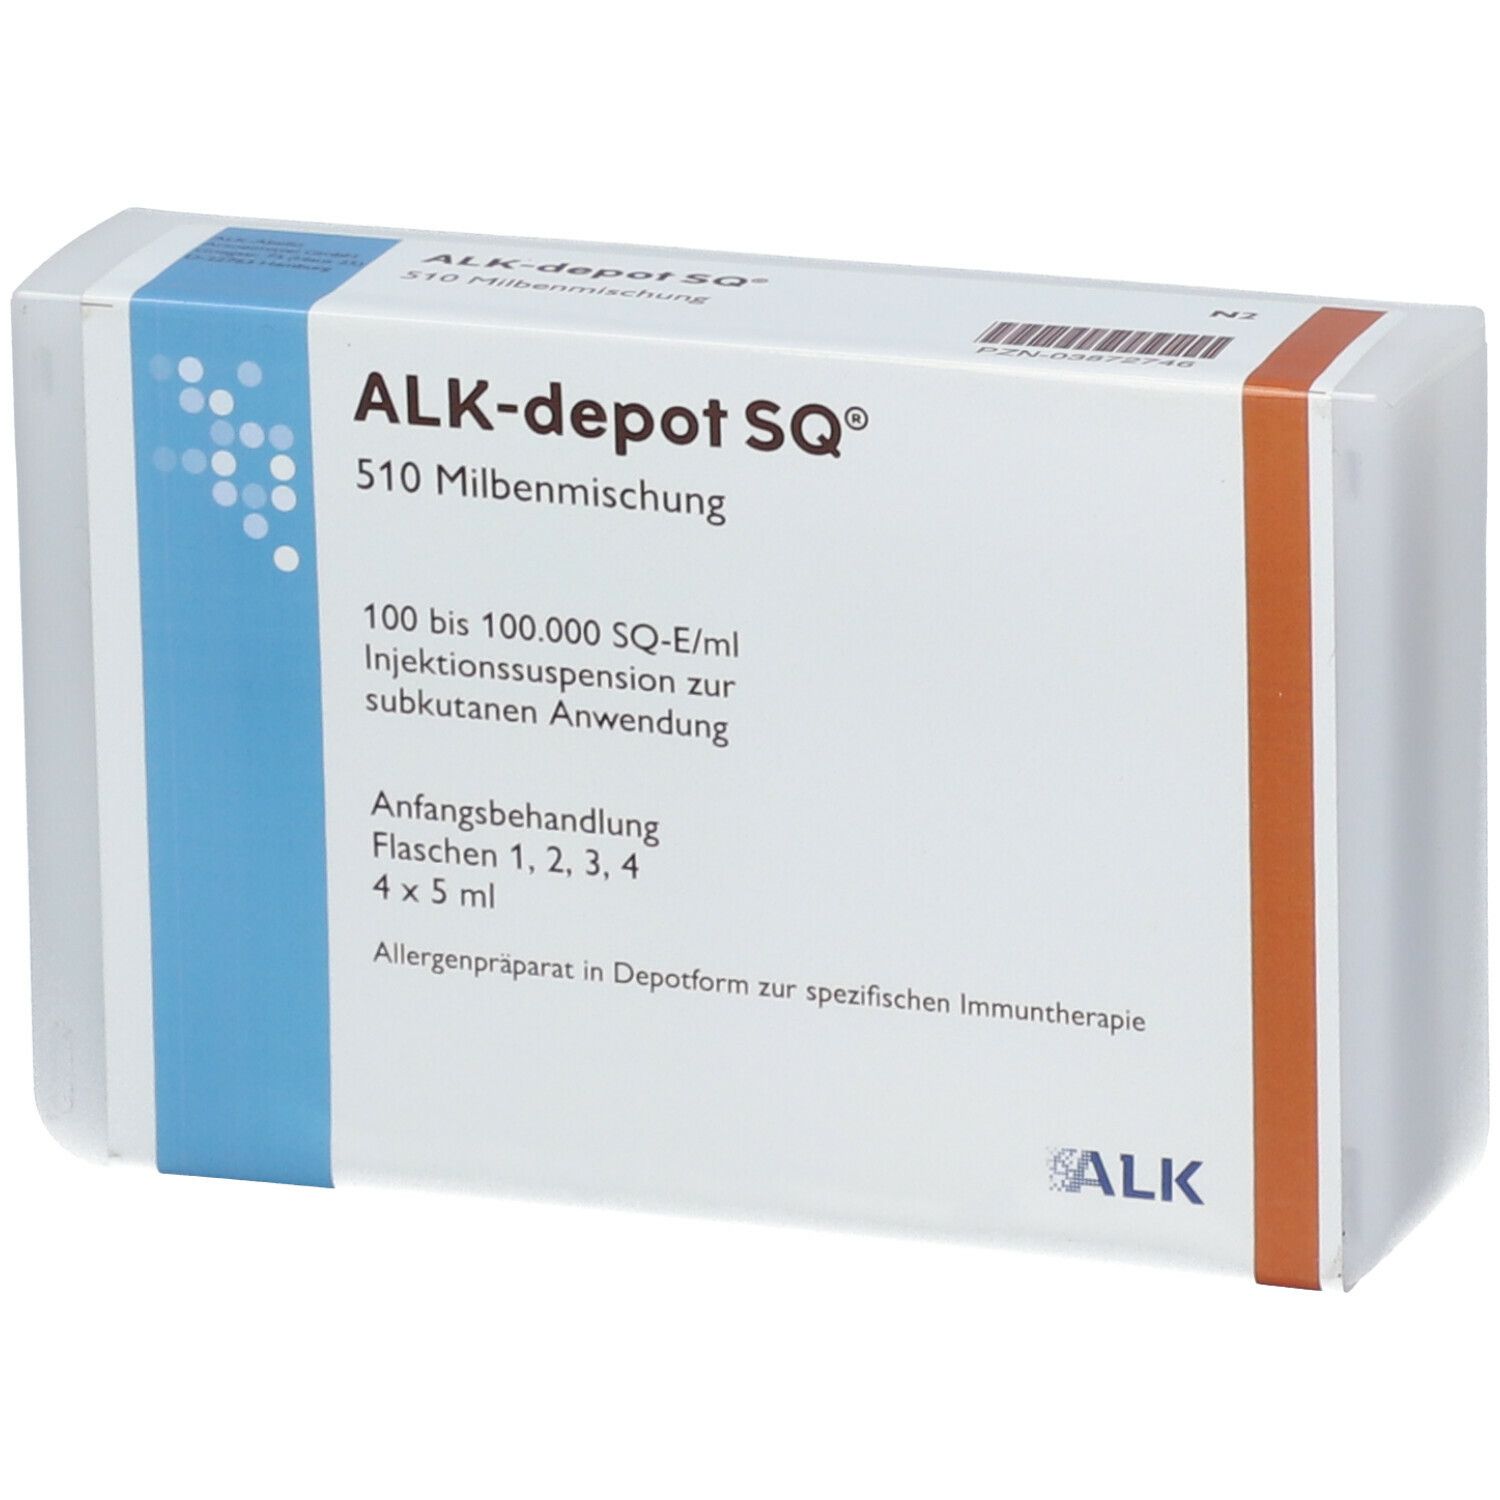 ALK-depot SQ® 510 Milbenmischung